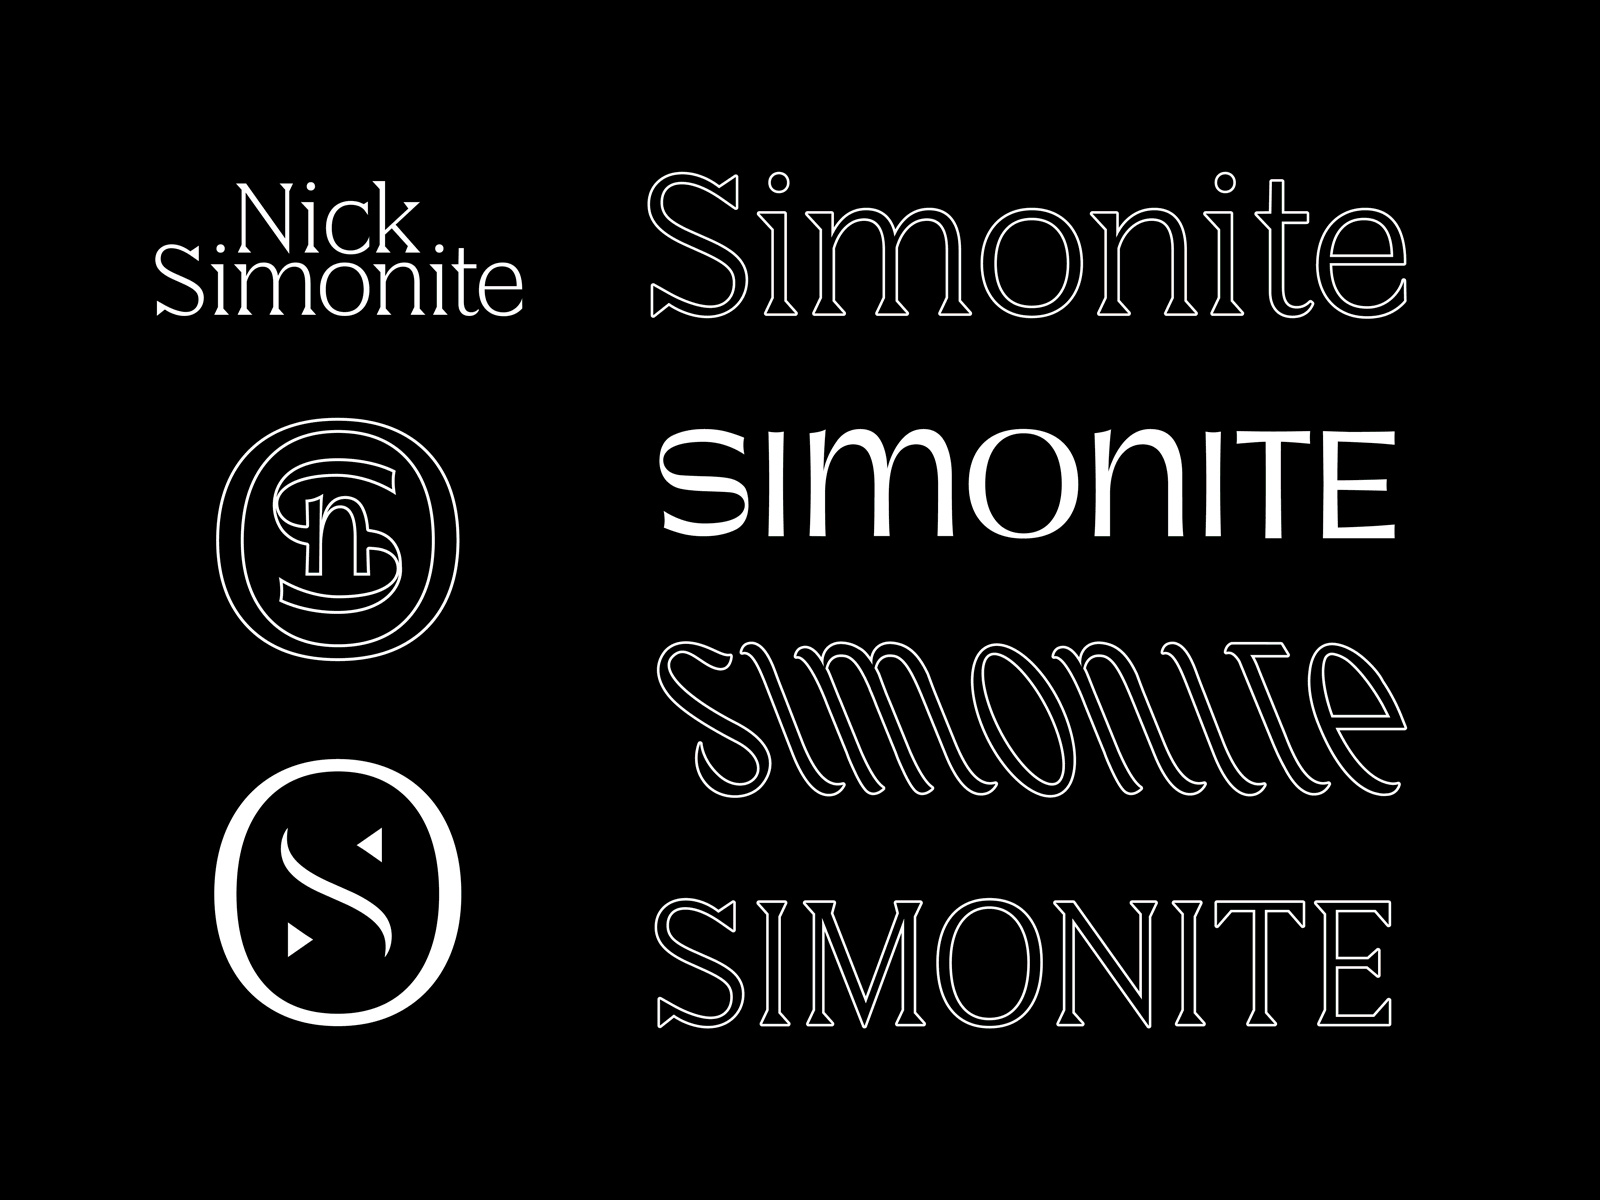 Simonite austin brand custom type initials lettering lettering logo logo mark logotype monogram photographer refresh tx